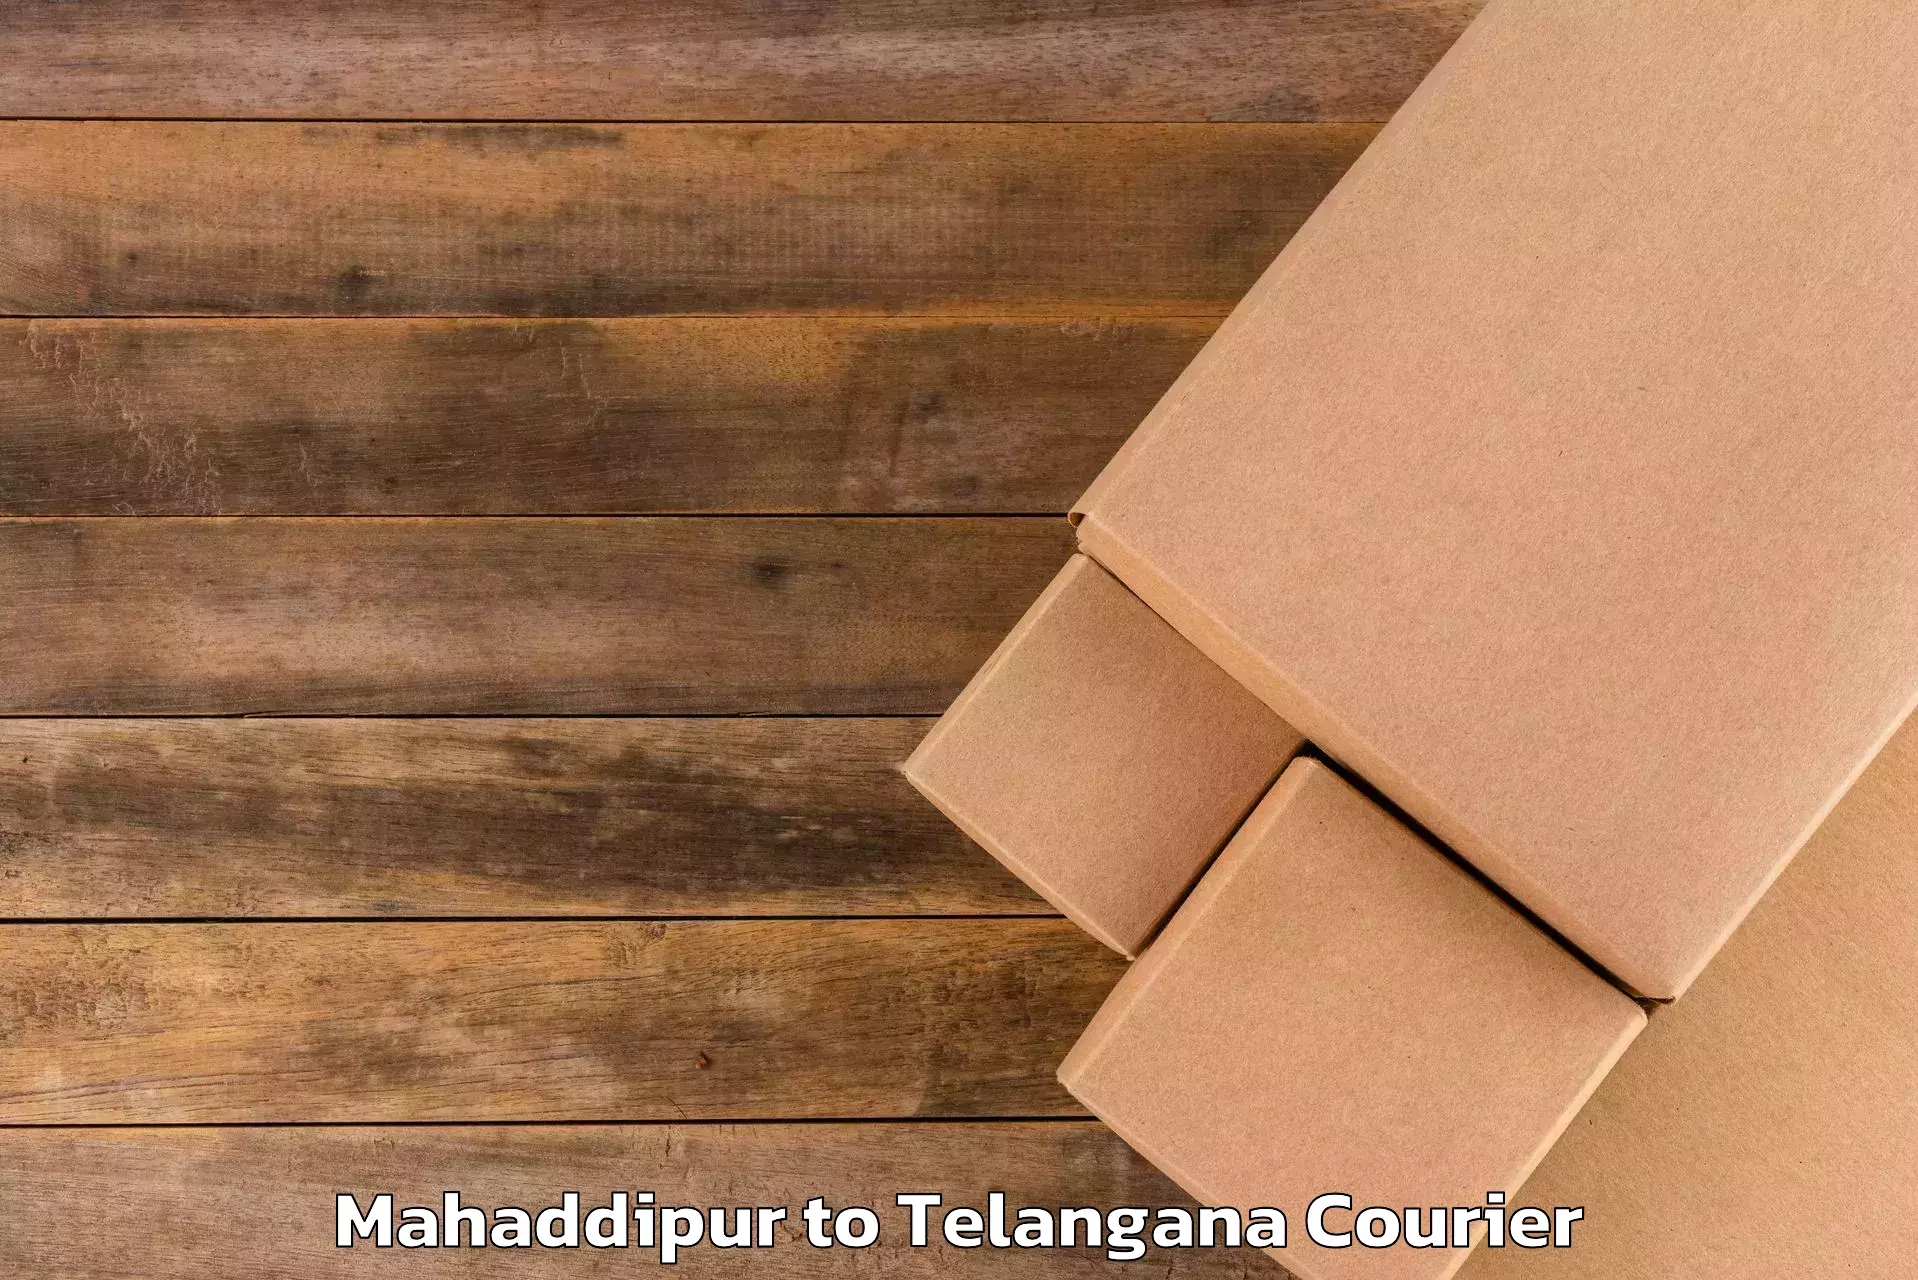 Luggage delivery optimization Mahaddipur to Ibrahimpatnam